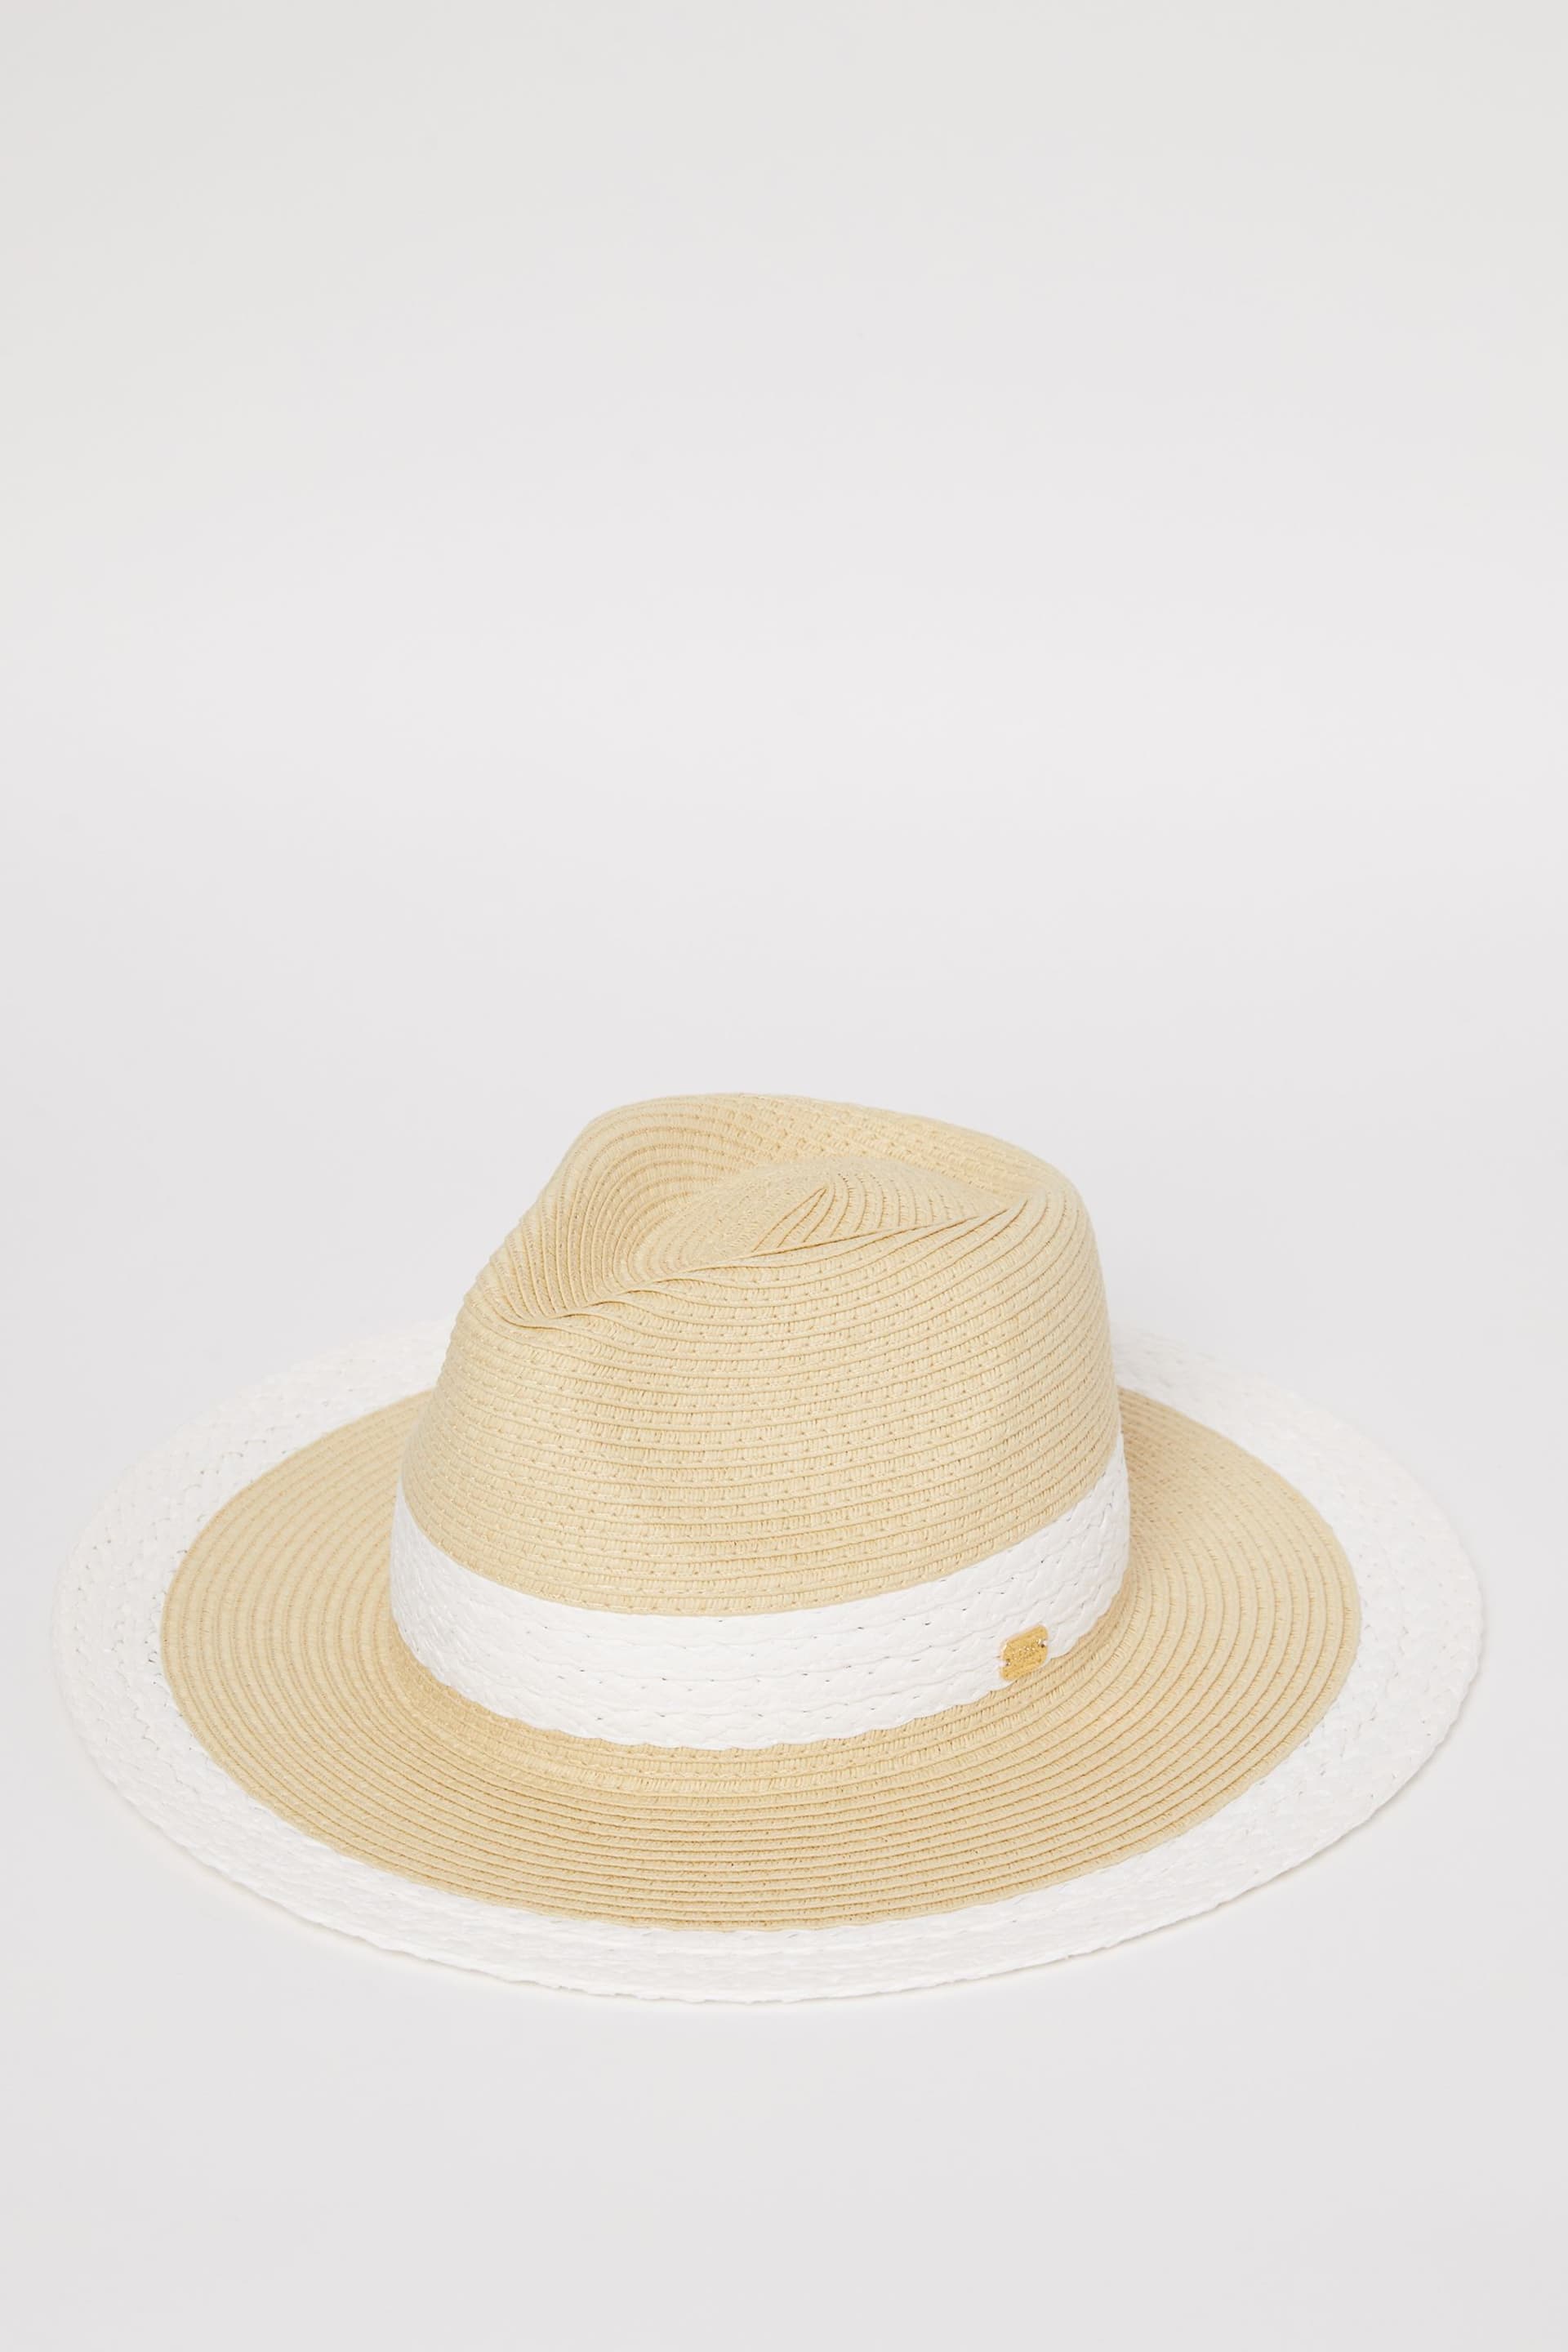 Lipsy White/Neutral Straw Fedora Hat - Image 4 of 4